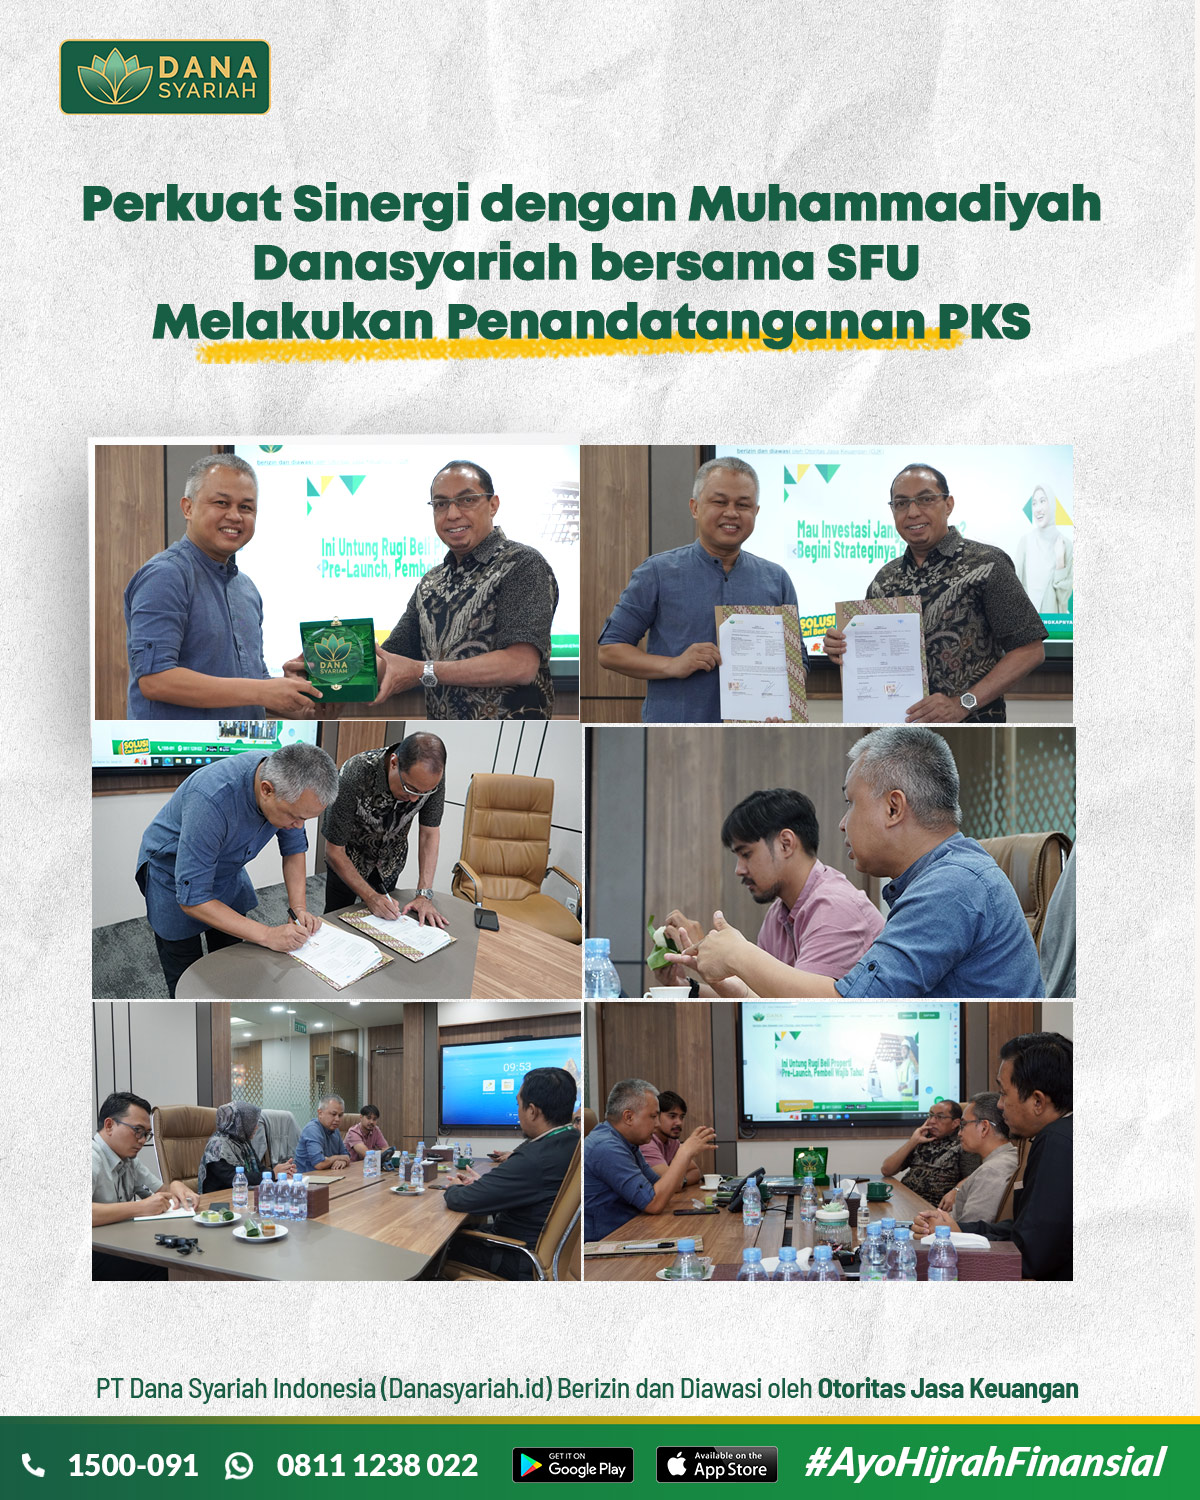 Dana Syariah Perkuat Sinergi dengan Muhammadiyah Danasyariah Bersama SFU Melakukan Penandatanganan PKS